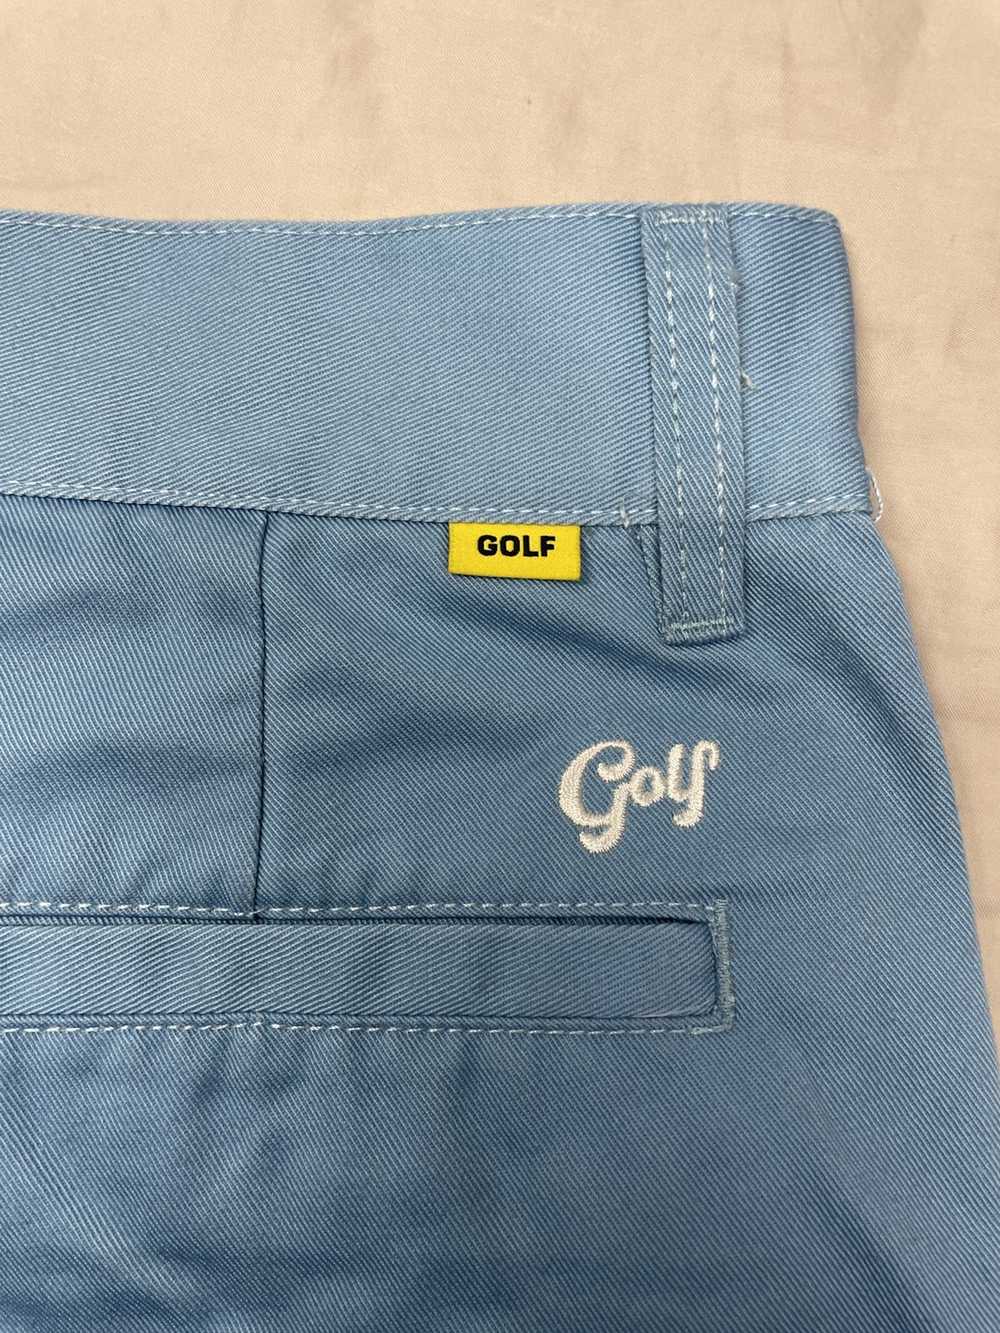 Golf Wang Golf “Baby Blue” Shorts - image 3